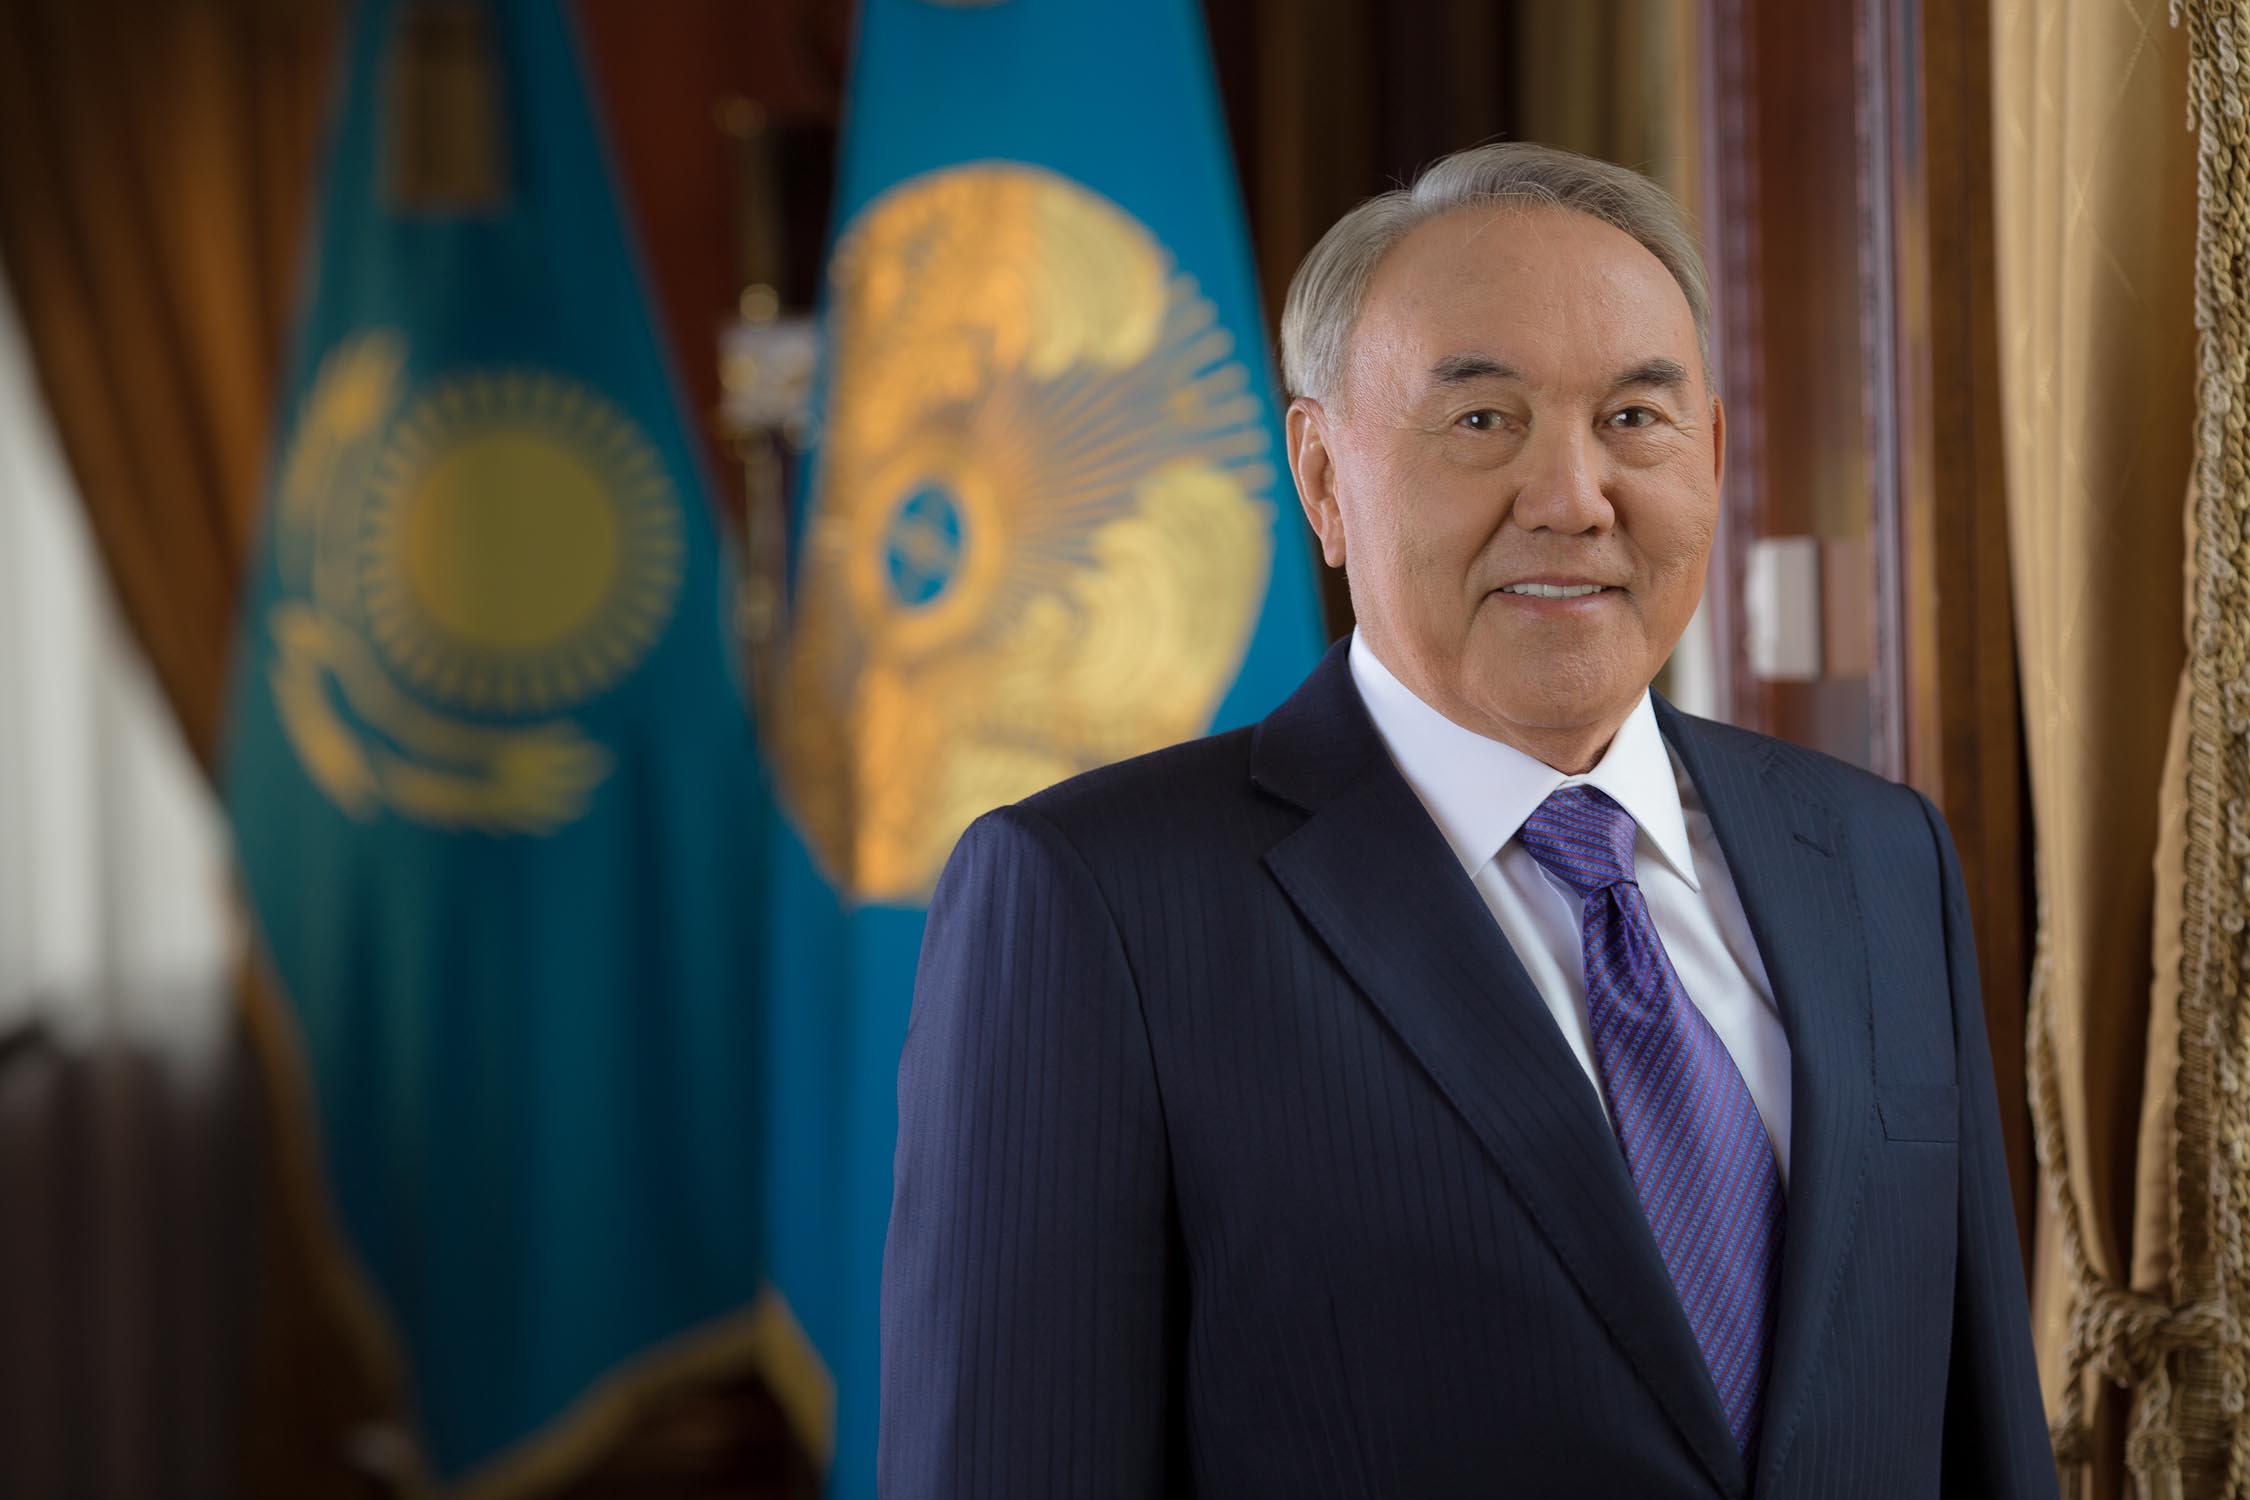 ҚР Президенті Нұрсұлтан Назарбаев: Абылай аңсаған азаттық